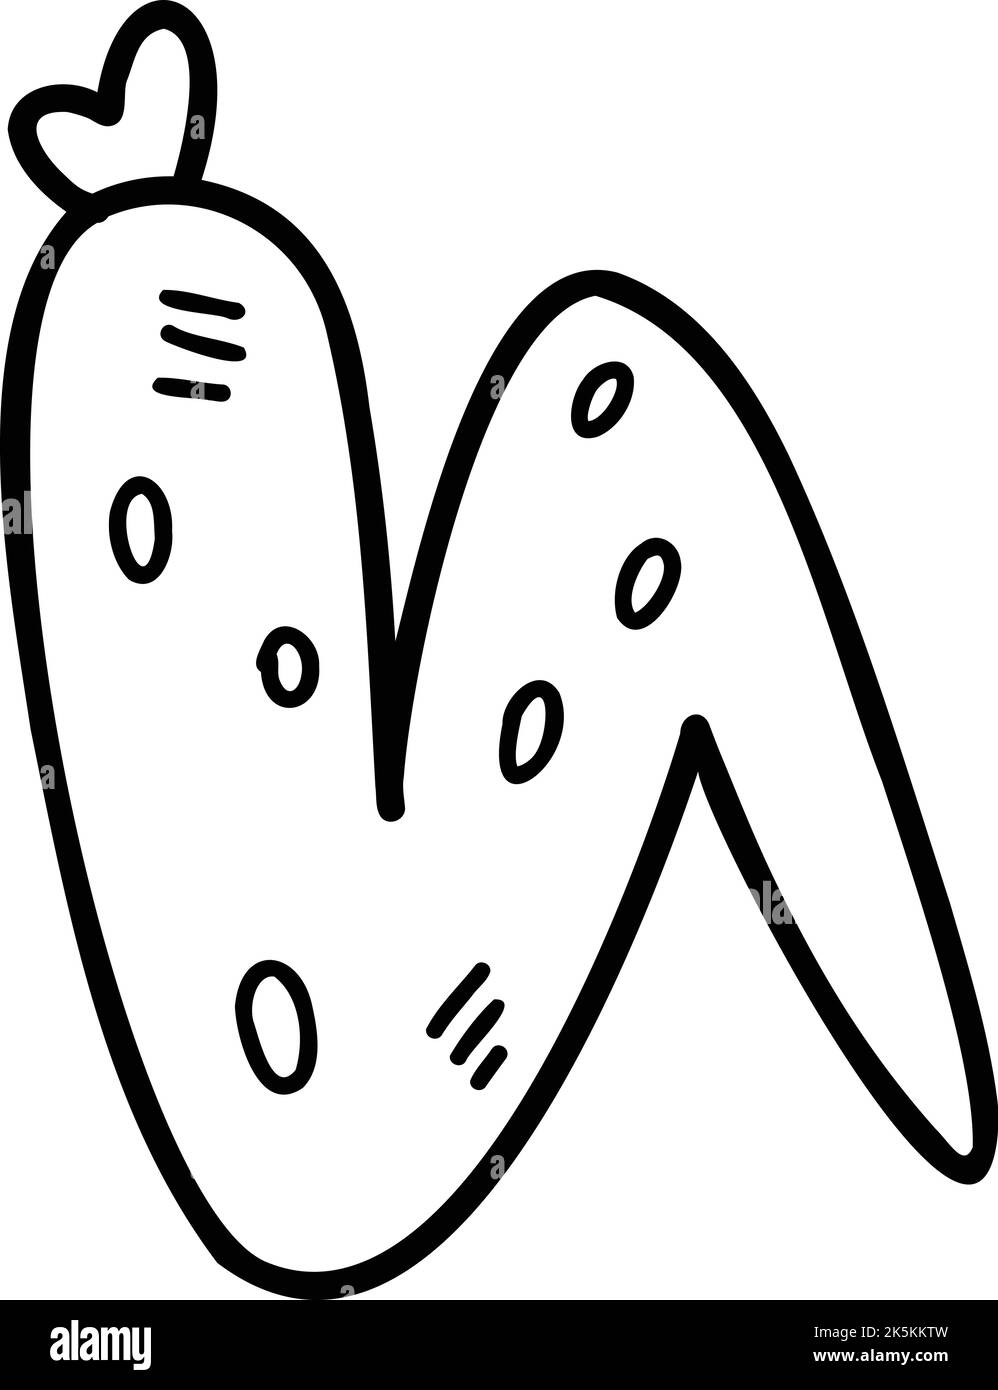 Illustration des ailes de poulet frites dessinées à la main, isolée sur fond Illustration de Vecteur